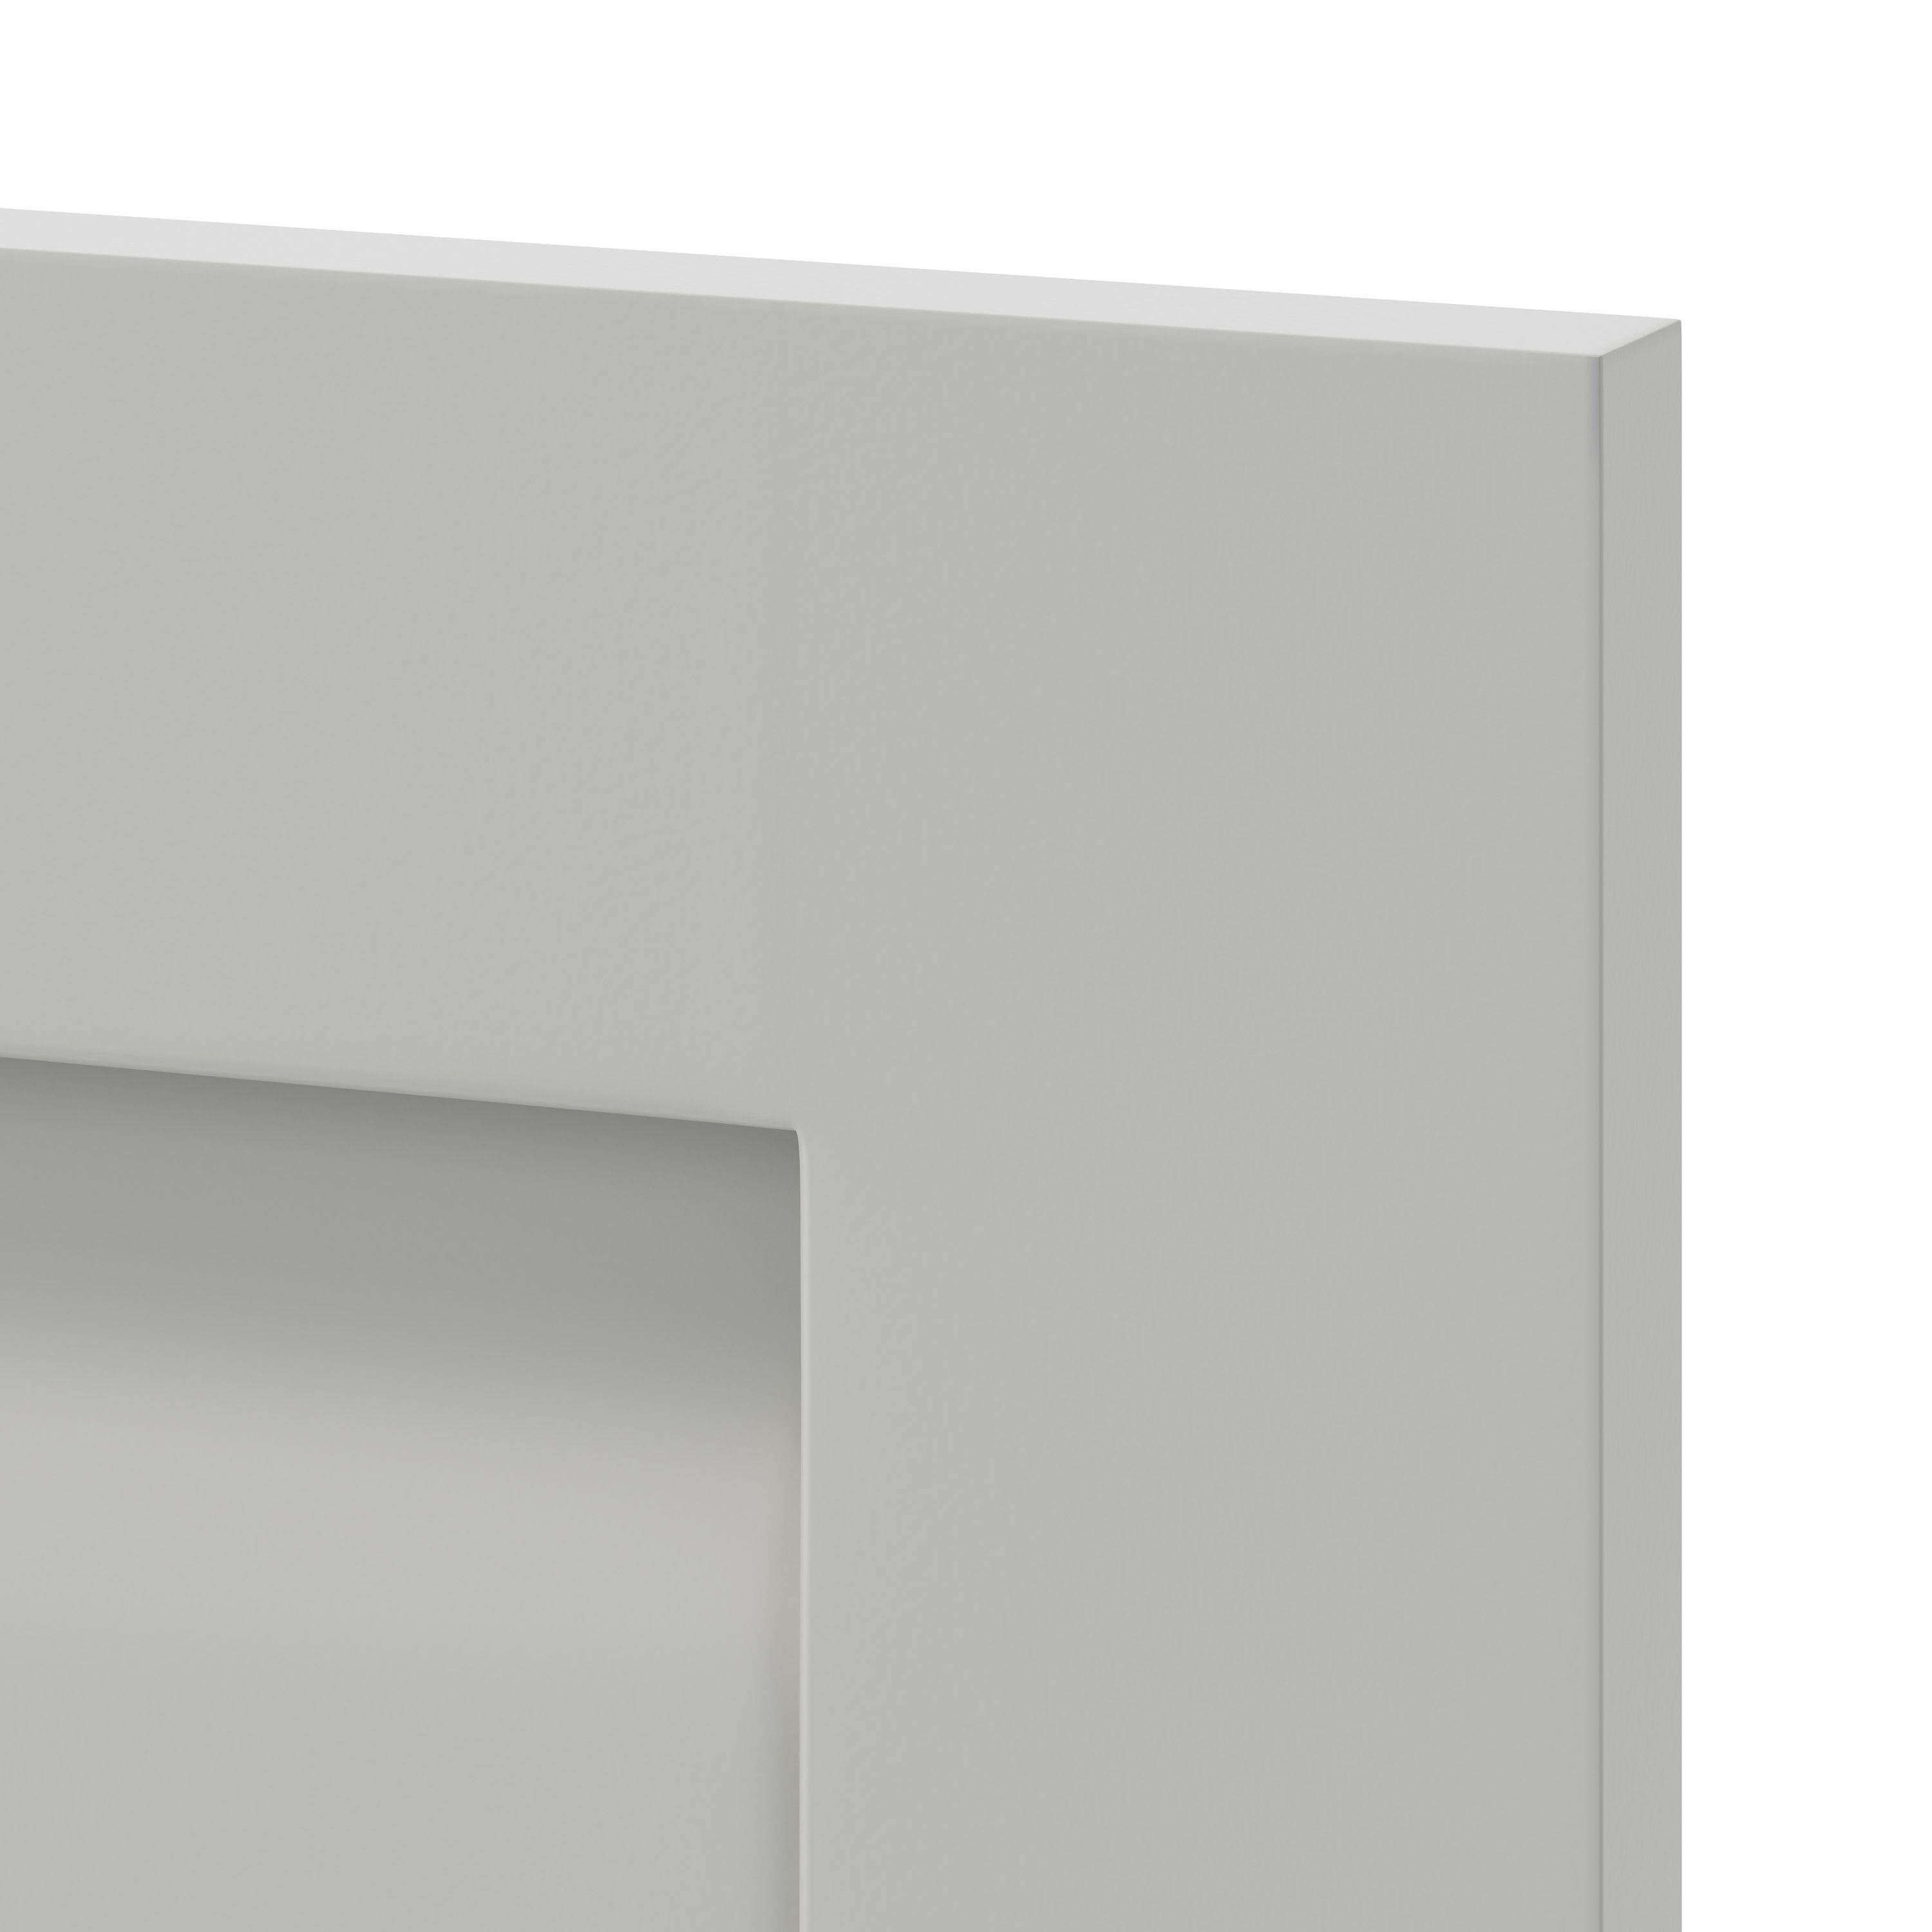 GoodHome Garcinia Matt stone integrated handle shaker Drawer front, bridging door & bi fold door, (W)400mm (H)356mm (T)20mm